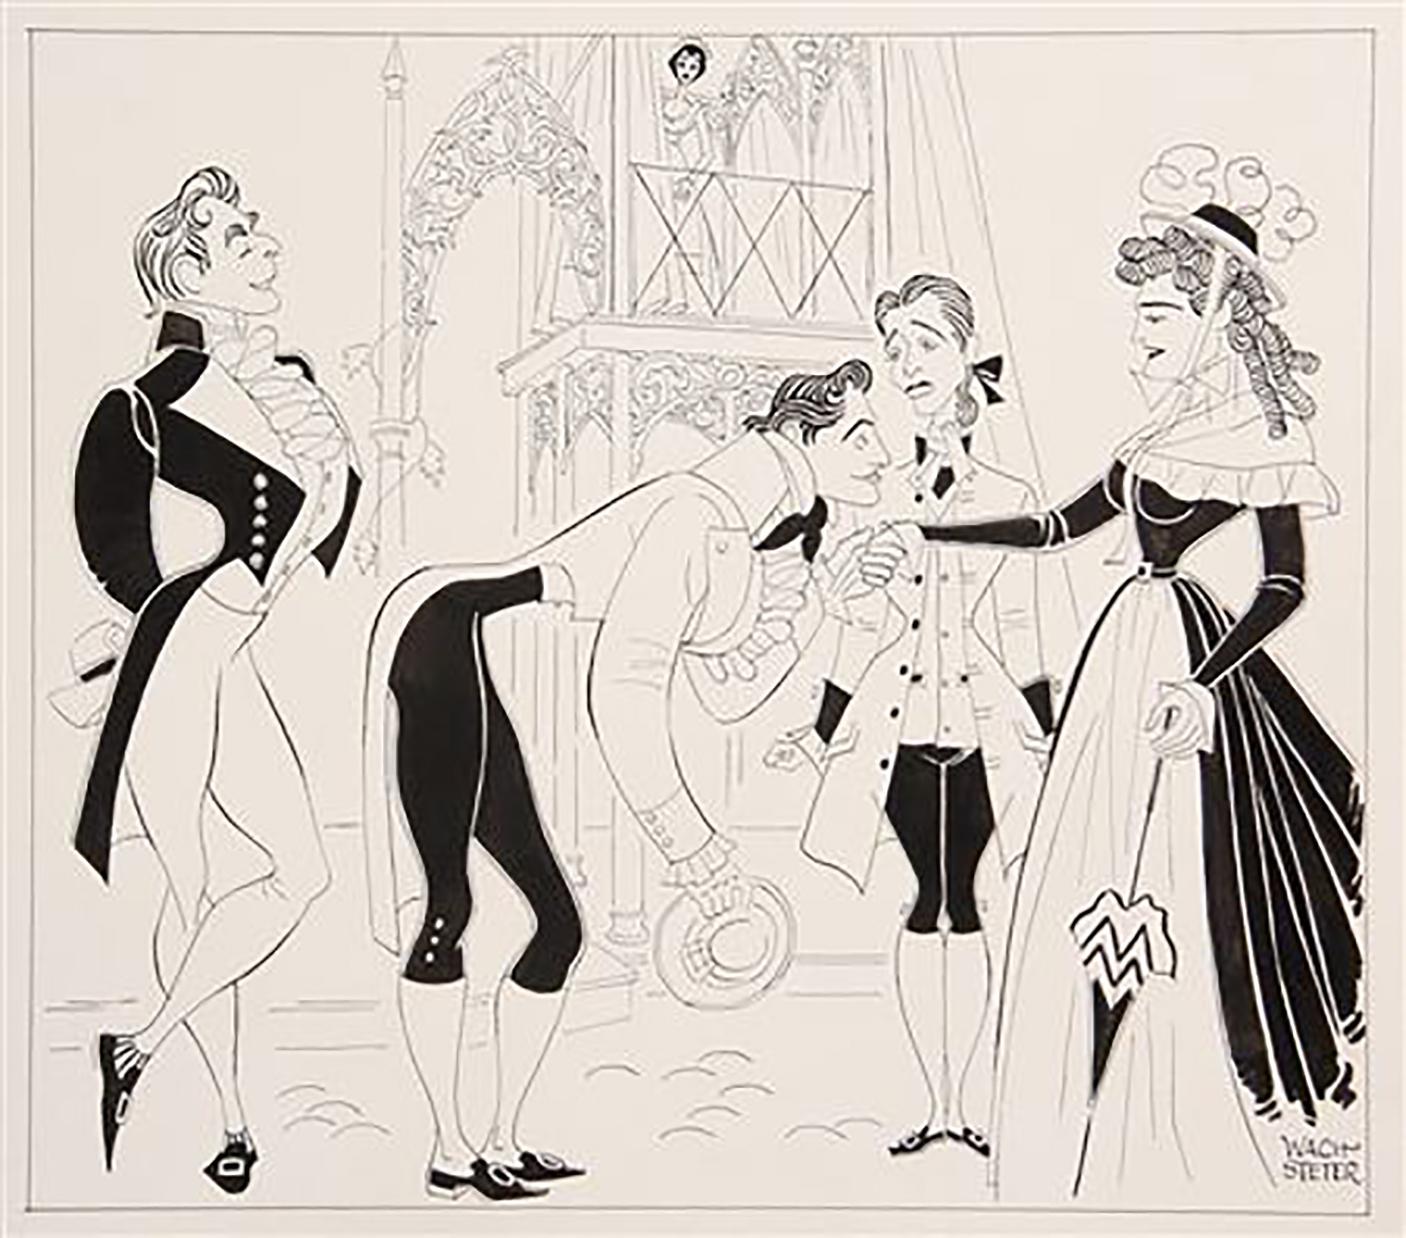 George Wachsteter Figurative Art - 1958 Broadway Comedy, "Two Gentlemen of Verona"